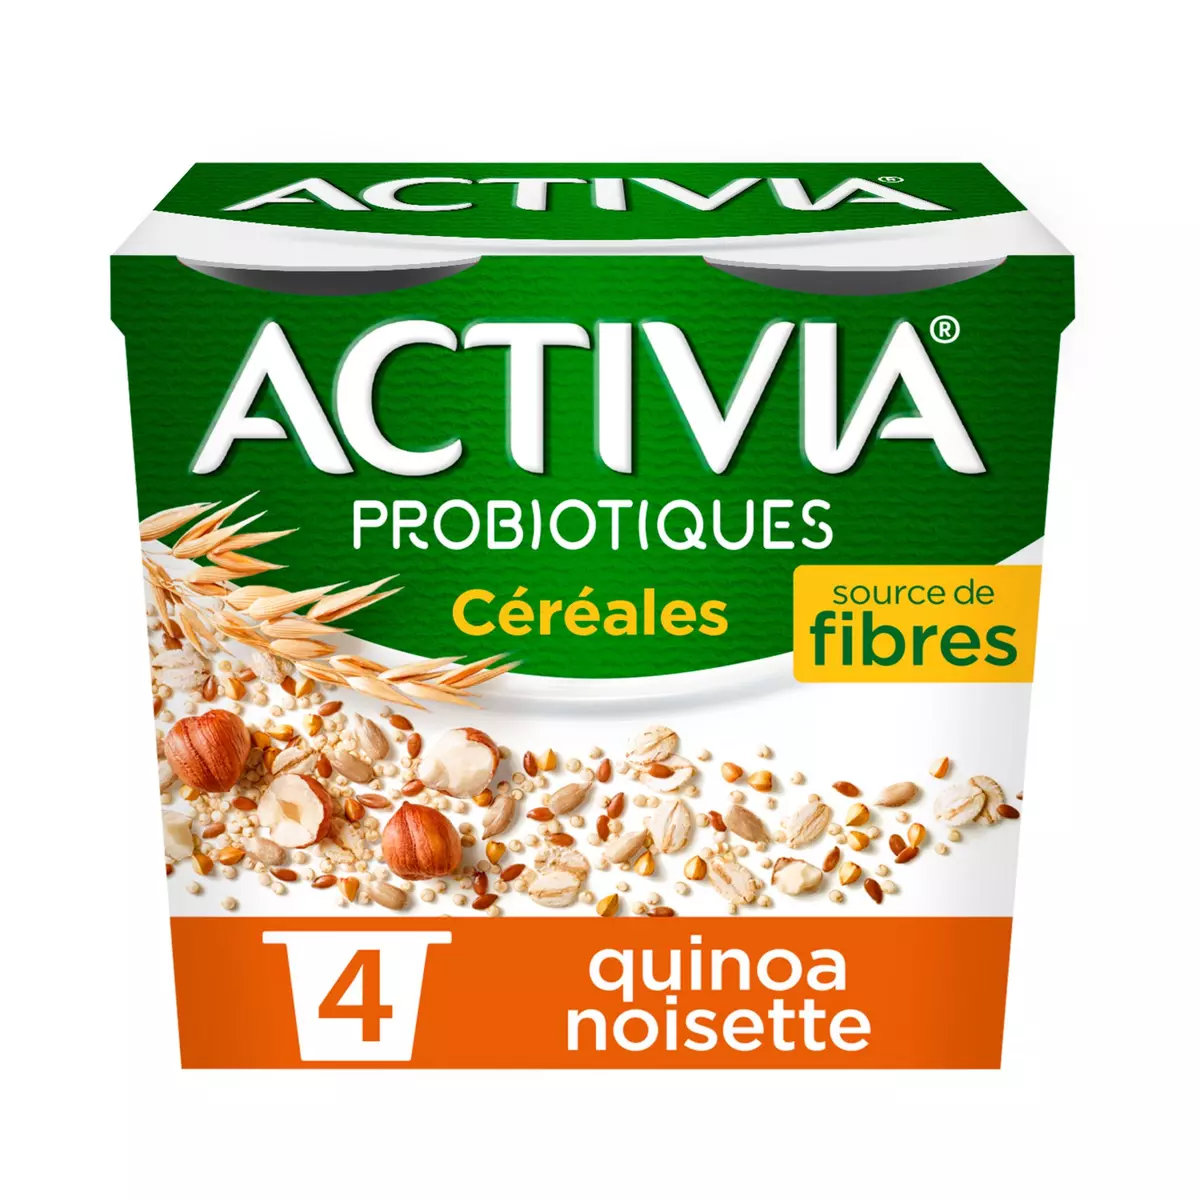 ACTIVIA CEREALES Probiotiques - Yaourt au bifidus au quinoa et noisette 4x120g